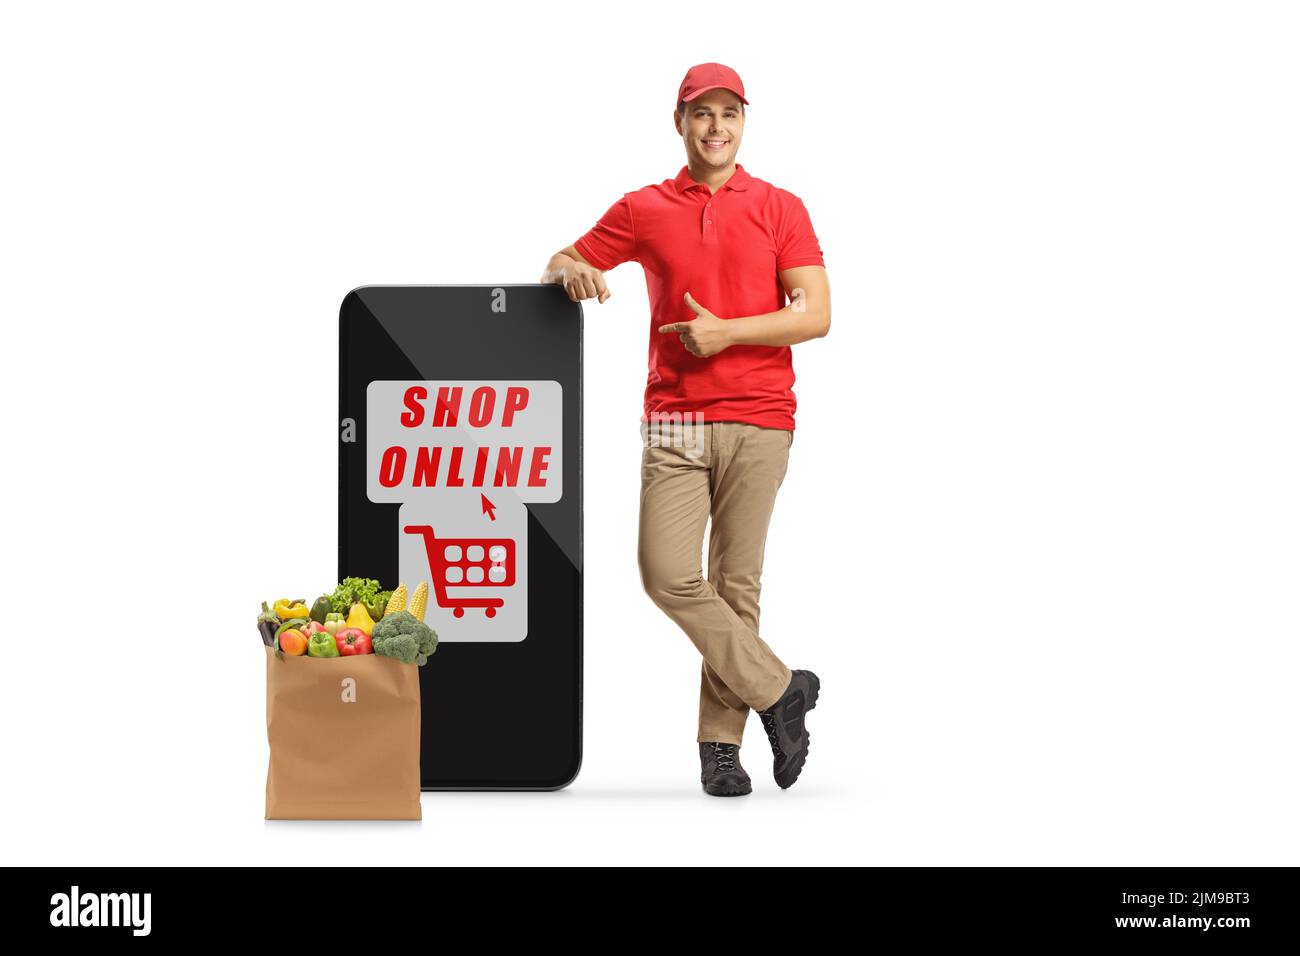 Mensajero apoyado en un teléfono móvil grande con tienda de texto en línea y una bolsa de alimentación y apuntando aislado sobre fondo blanco Foto de stock